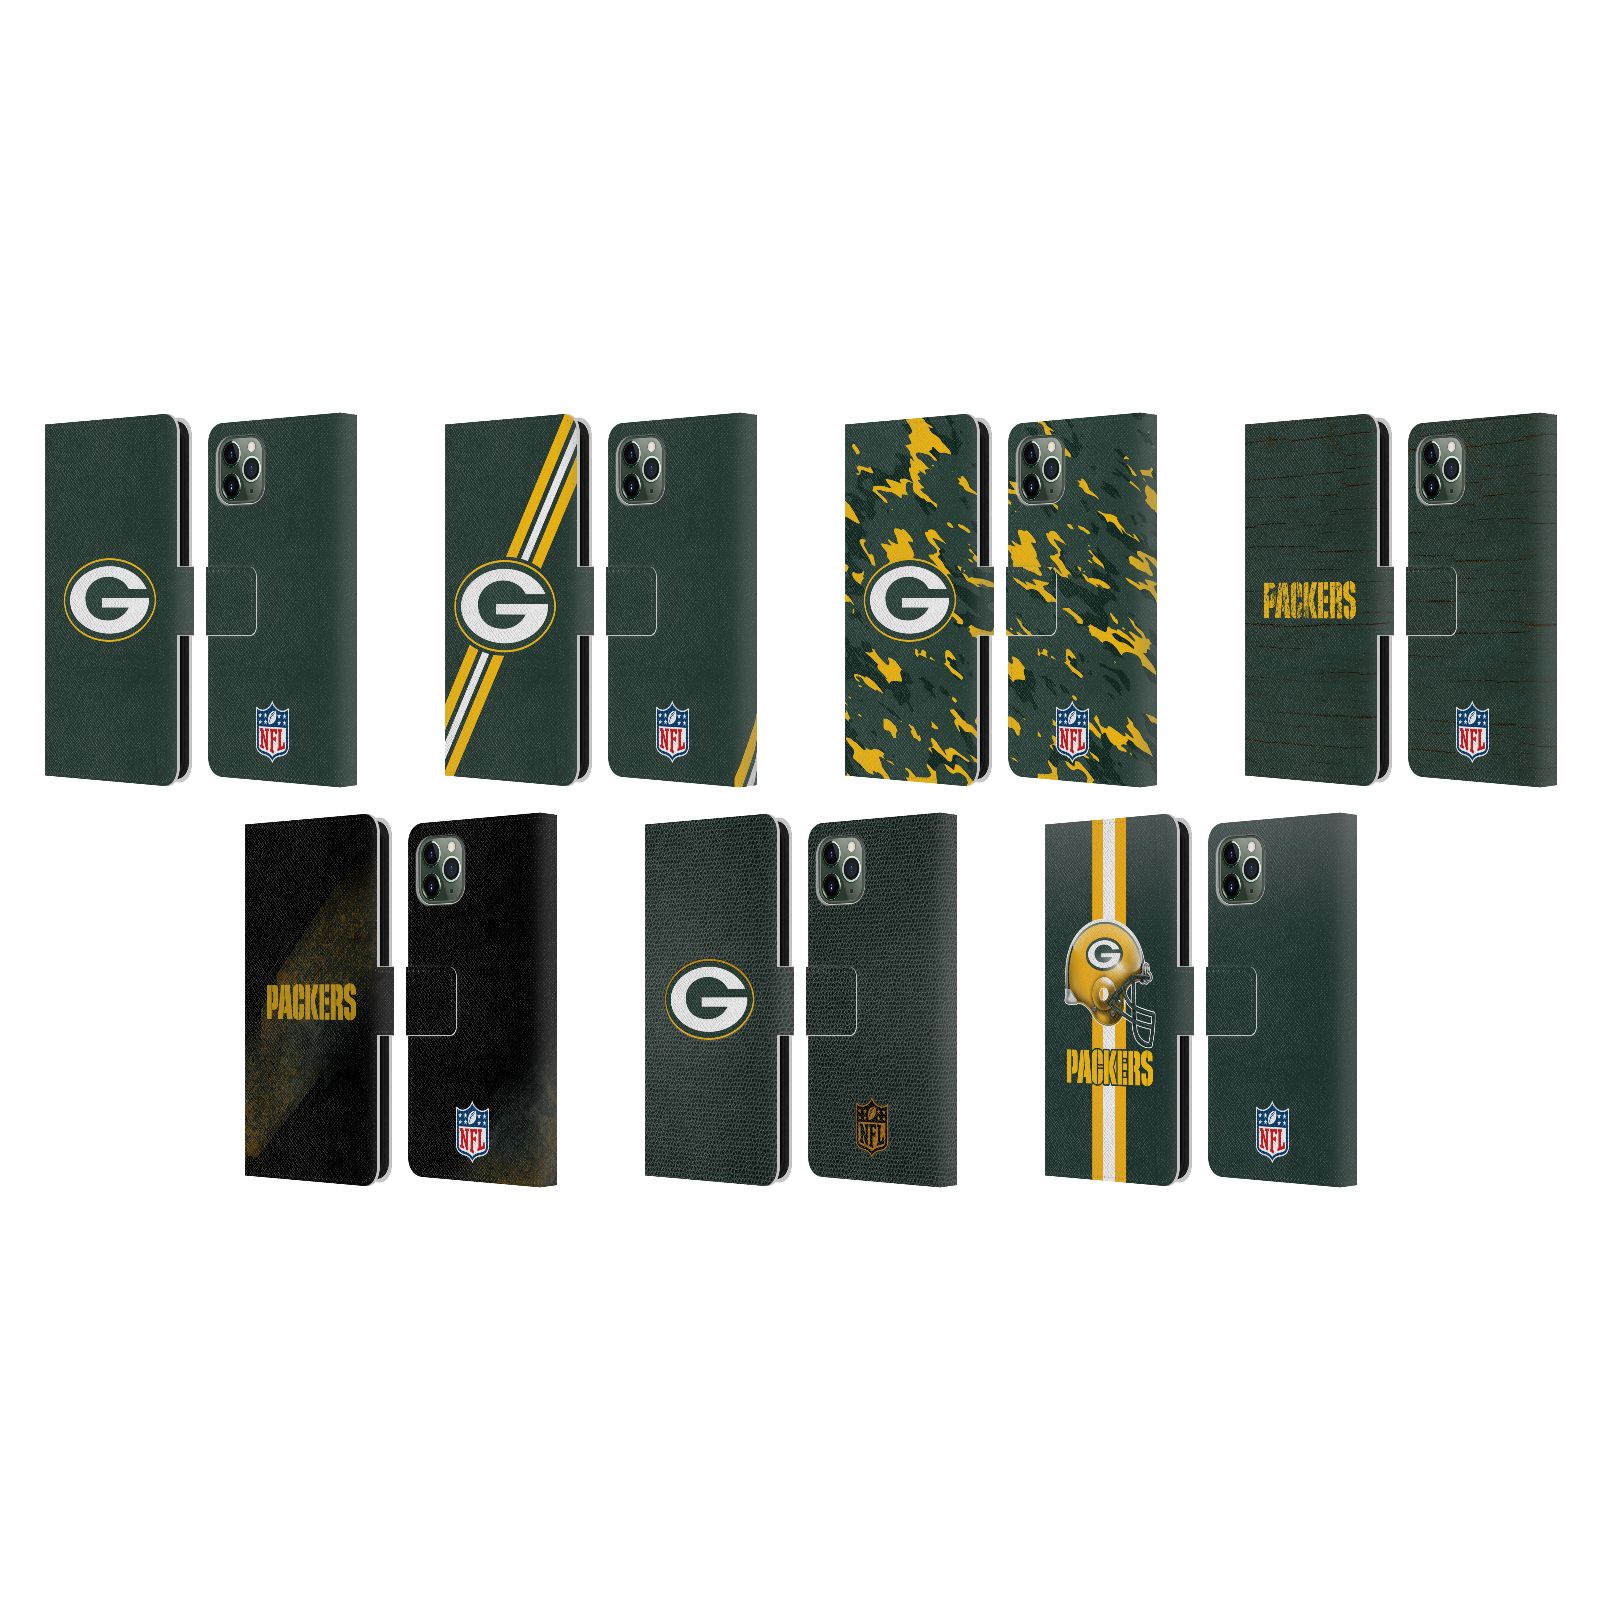 公式ライセンス NFL グリーンベイ・パッカーズ ロゴ レザー手帳型ウォレットタイプケース Apple iPhone 電話 スマホケース 全機種対応 グッズ